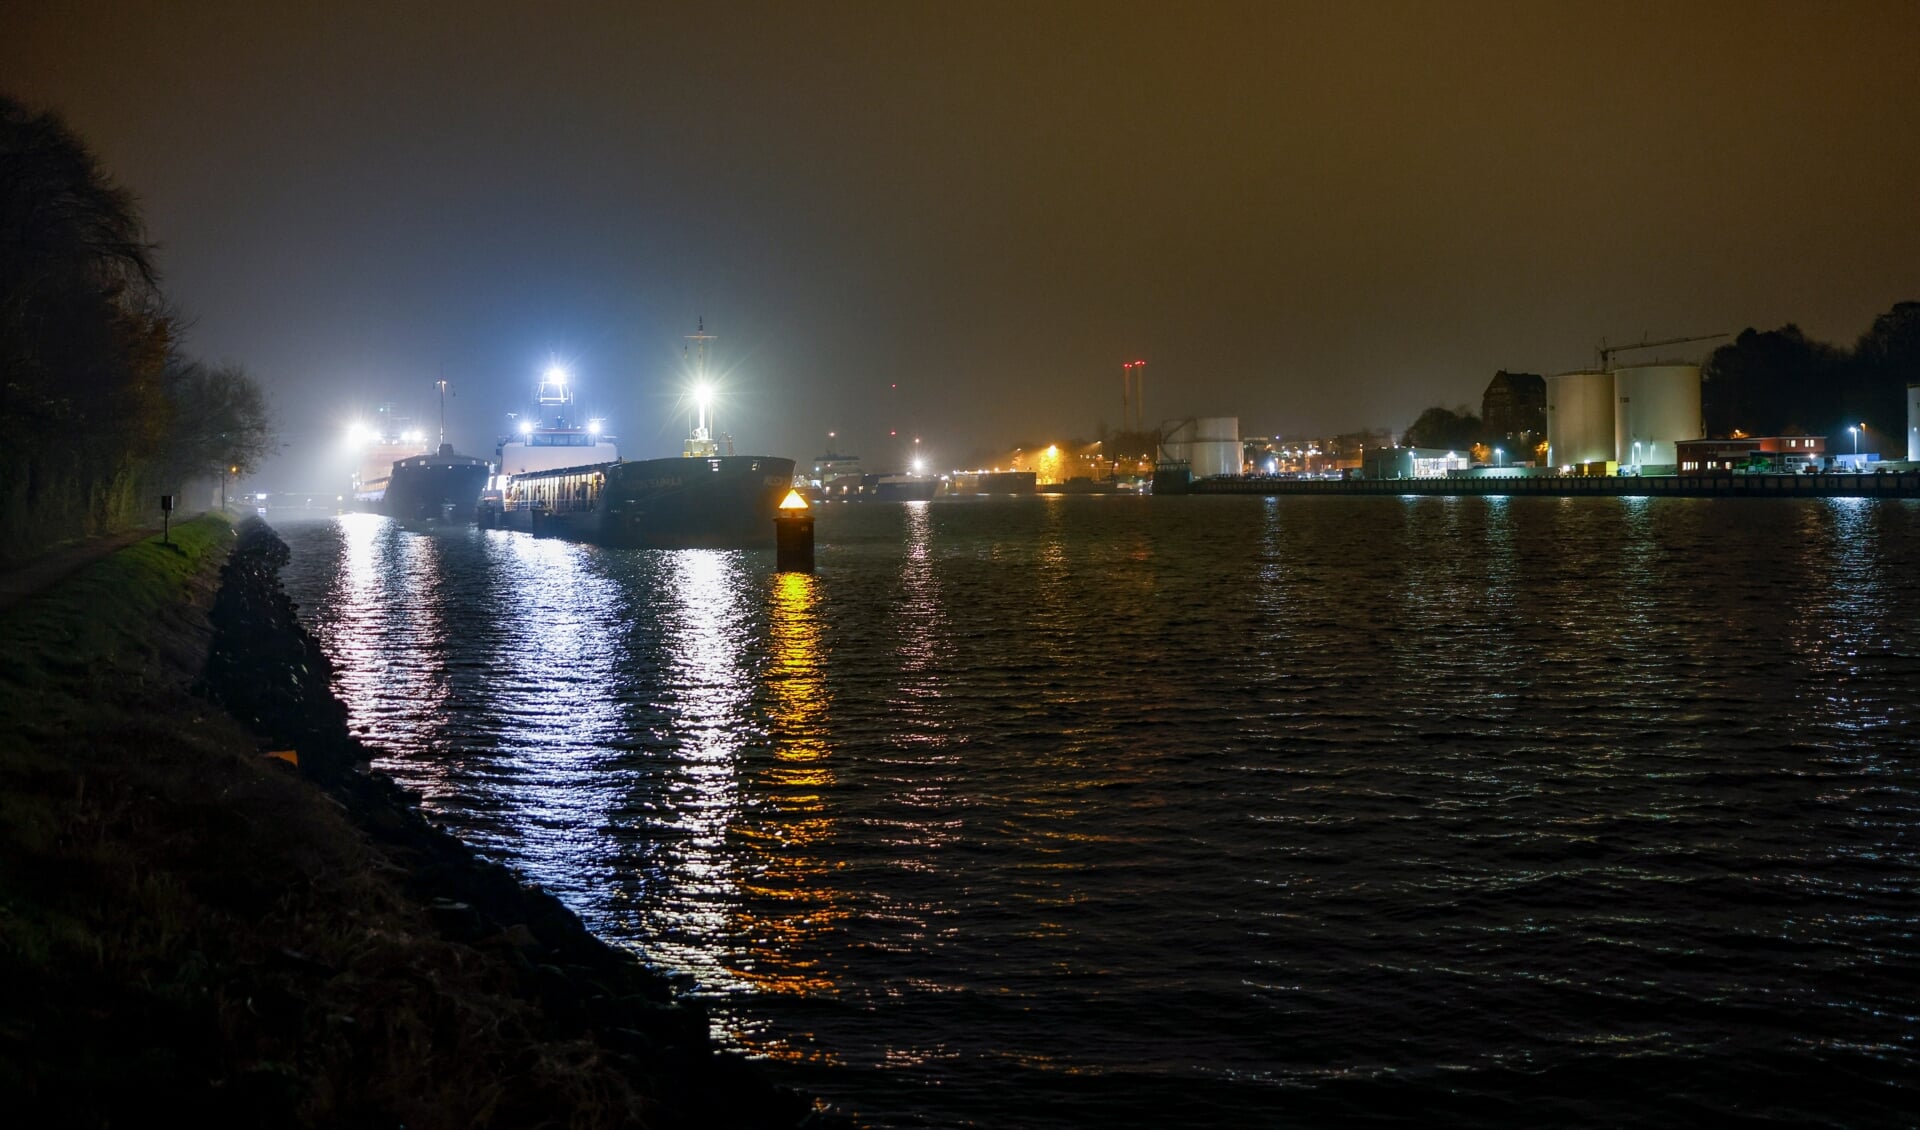 Schiffe warten im Nord-Ostsee-Kanal auf die Durchfahrt der Hochbrücke in Kiel-Holtenau. Ein Schiff war mit der Brücke kollidiert, worauf hin diese für den Schiffs- und Autoverkehr gesperrt wurde. Foto: